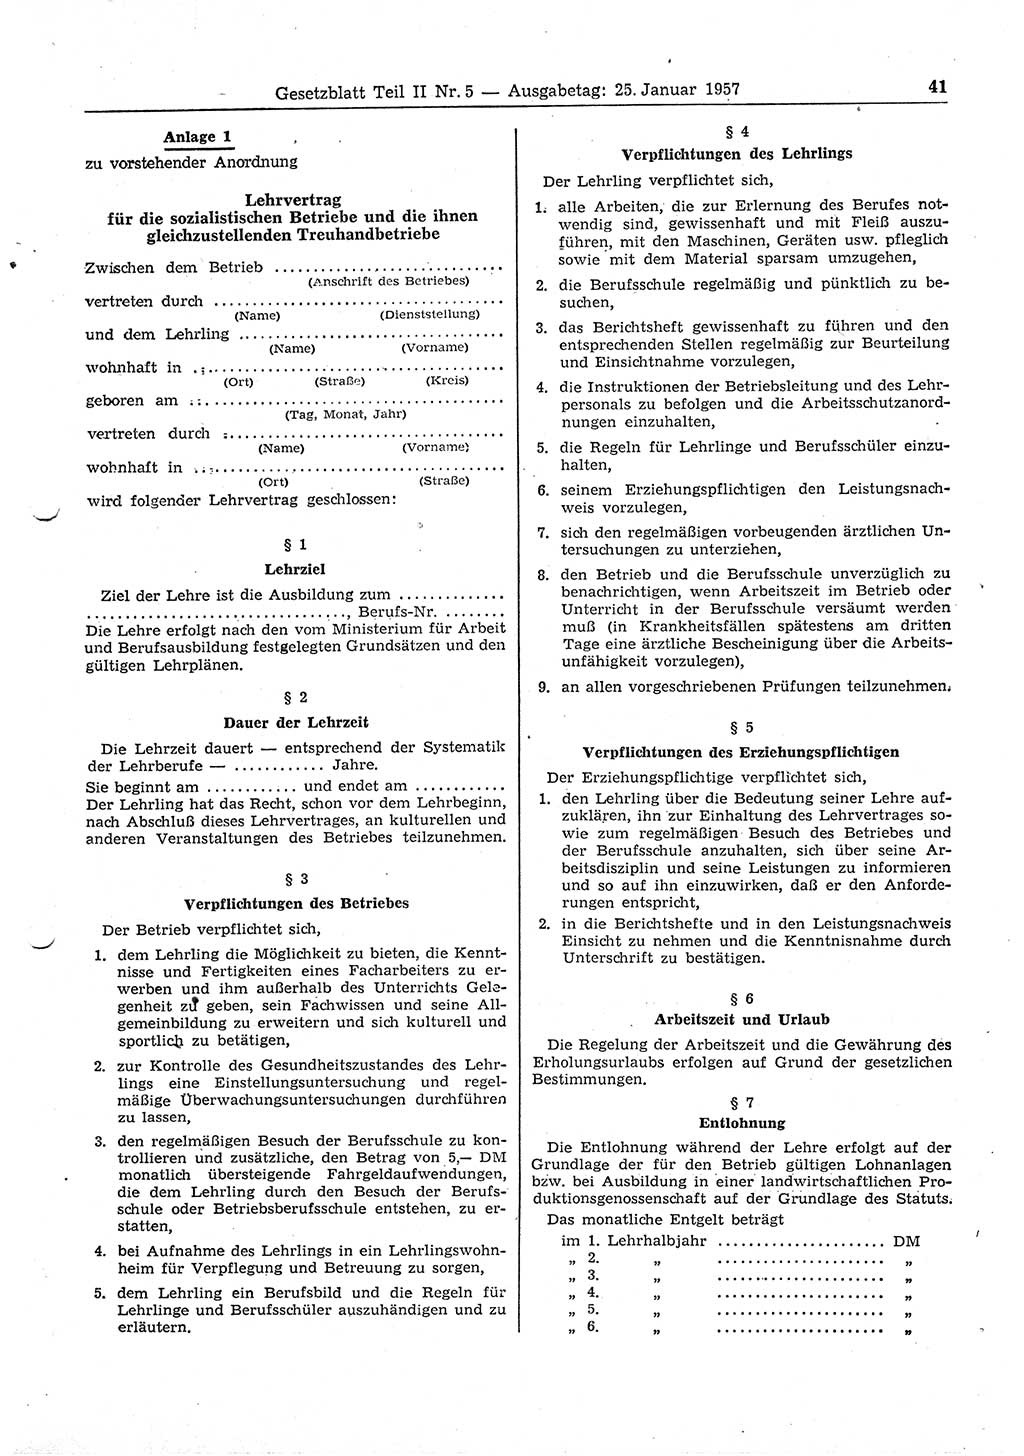 Gesetzblatt (GBl.) der Deutschen Demokratischen Republik (DDR) Teil ⅠⅠ 1957, Seite 41 (GBl. DDR ⅠⅠ 1957, S. 41)